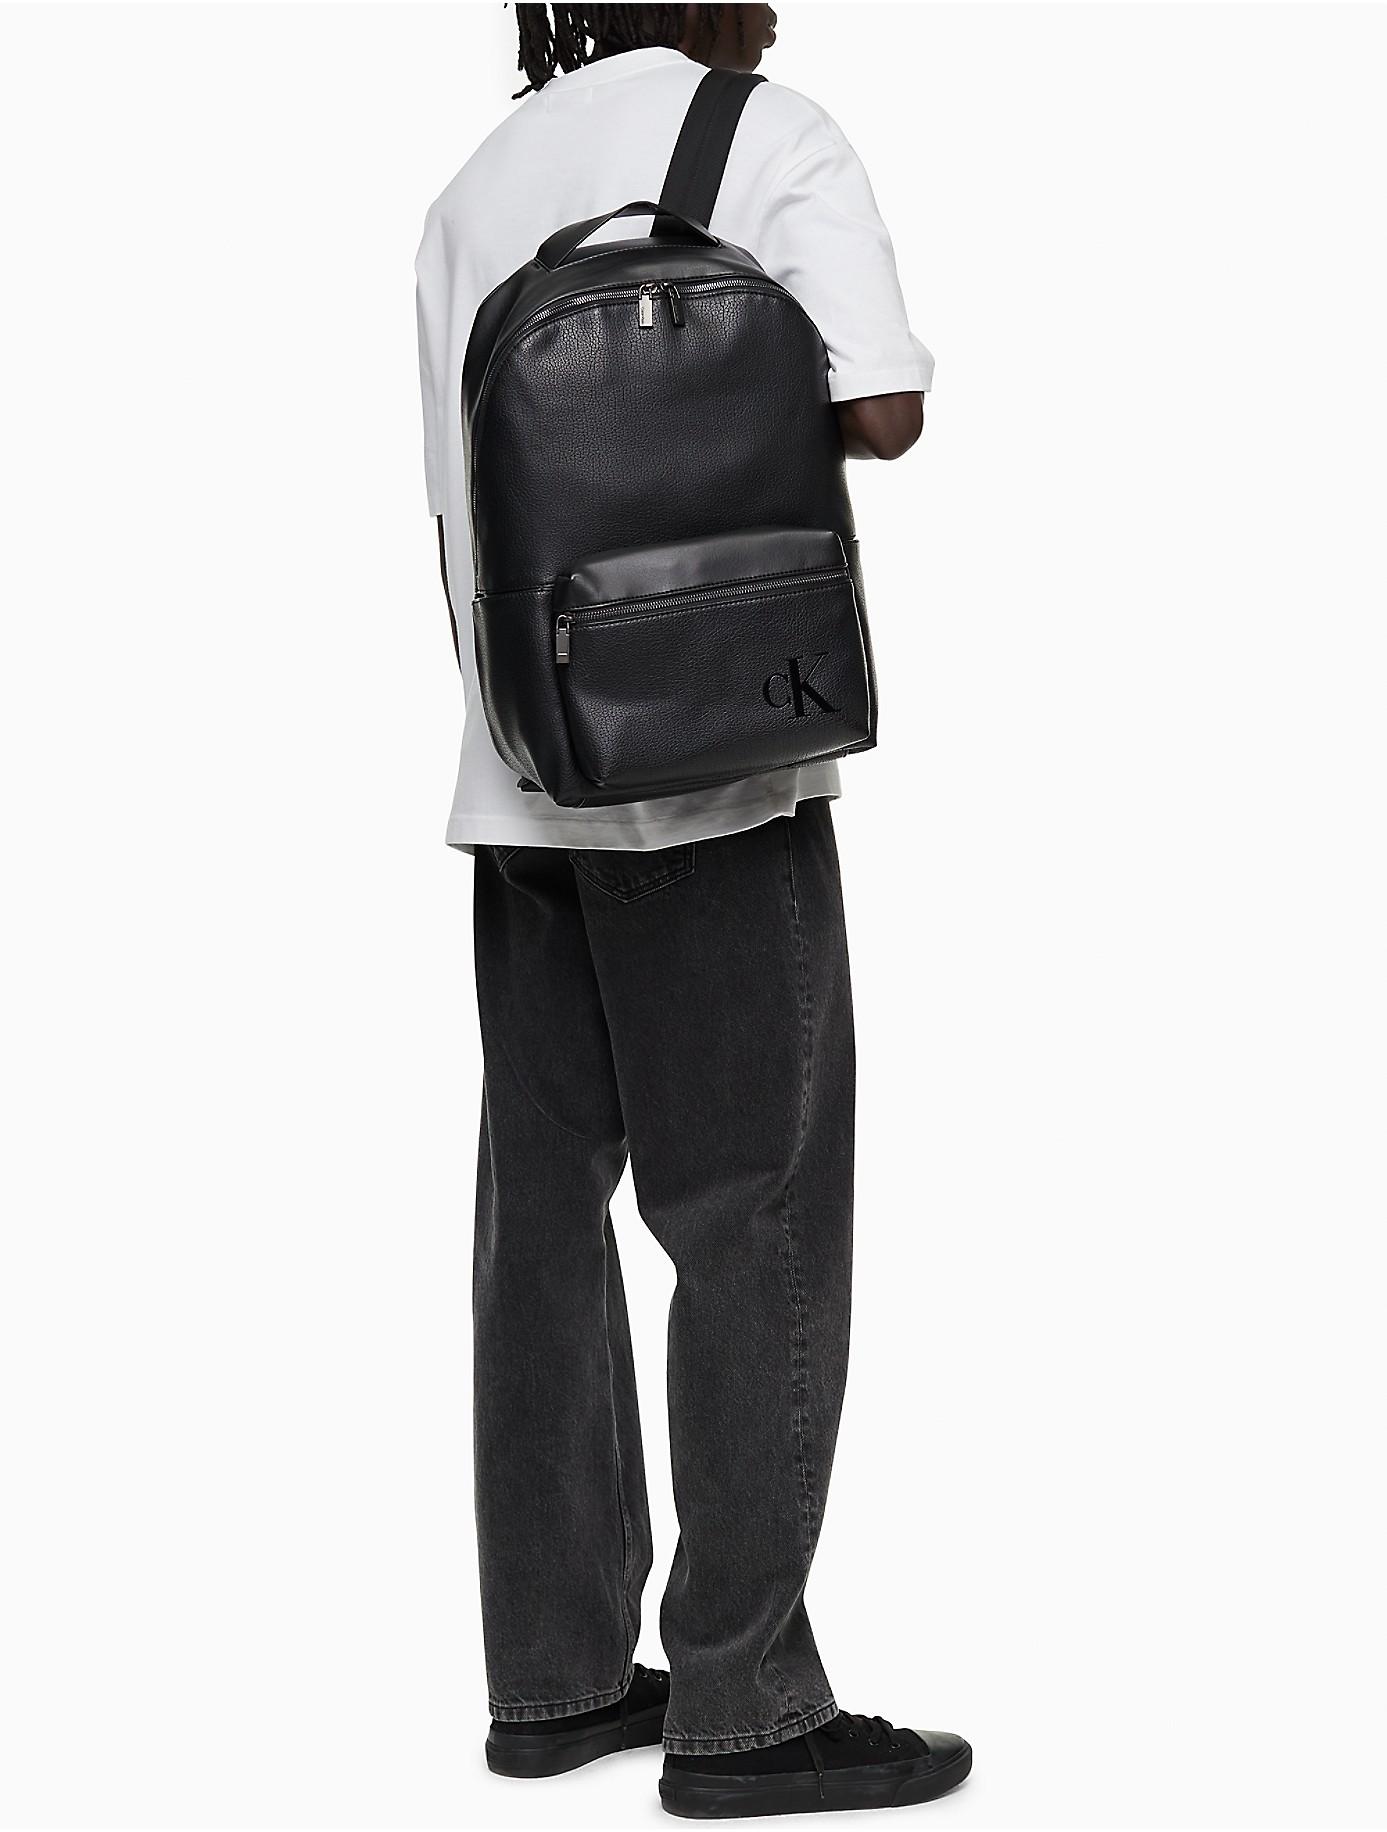 Calvin Klein Pebble Mono Logo Backpack in Black for Men | Lyst